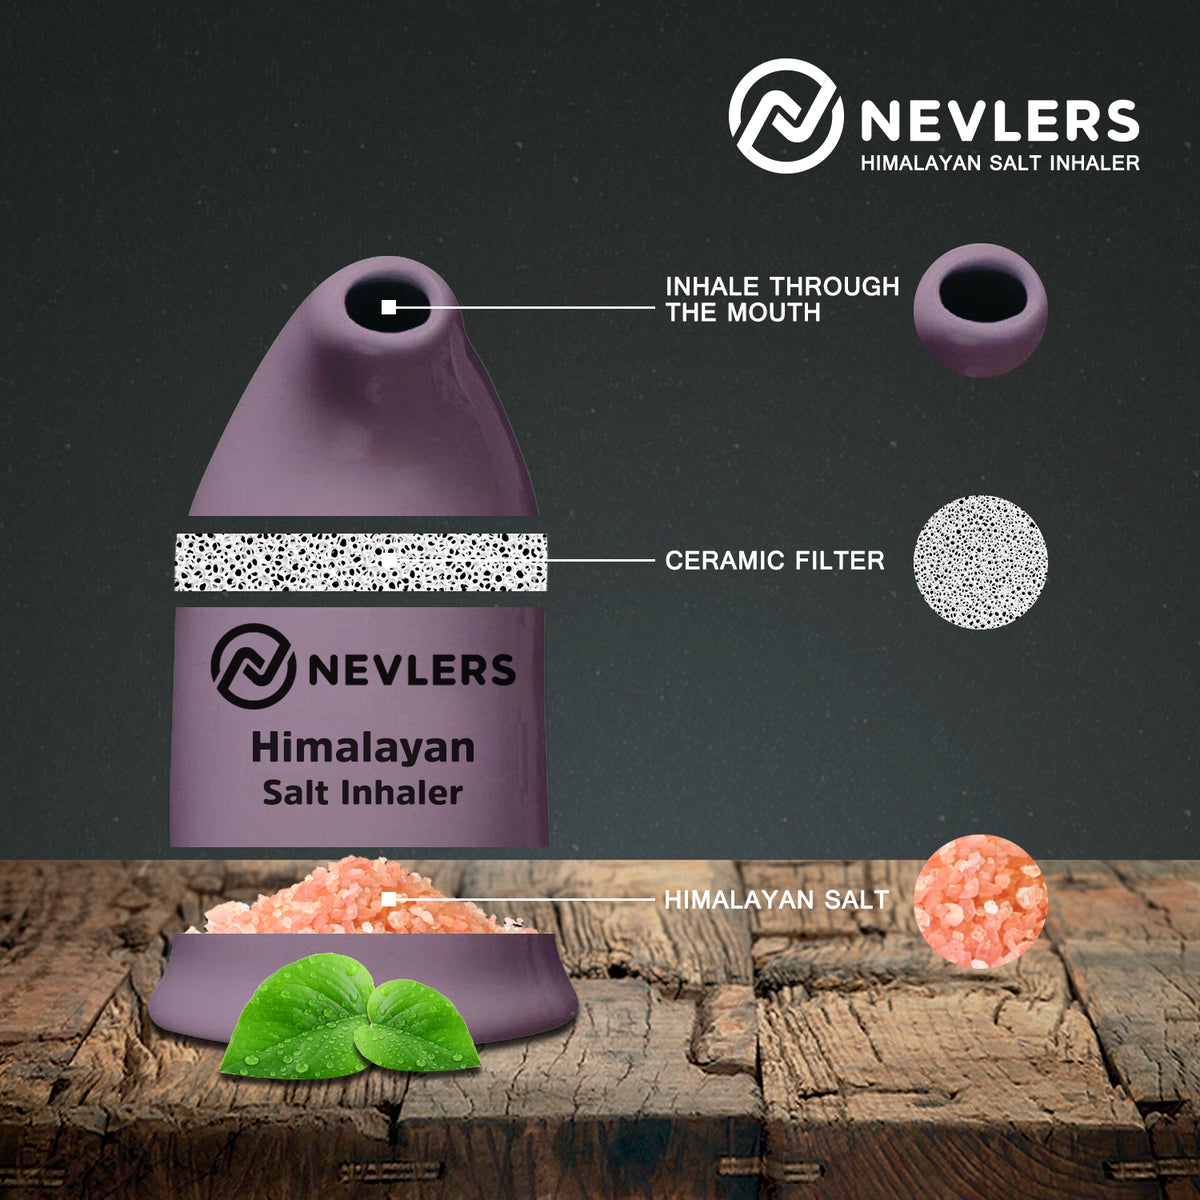 Nevlers Himalayan Salt Inhaler - Lavender